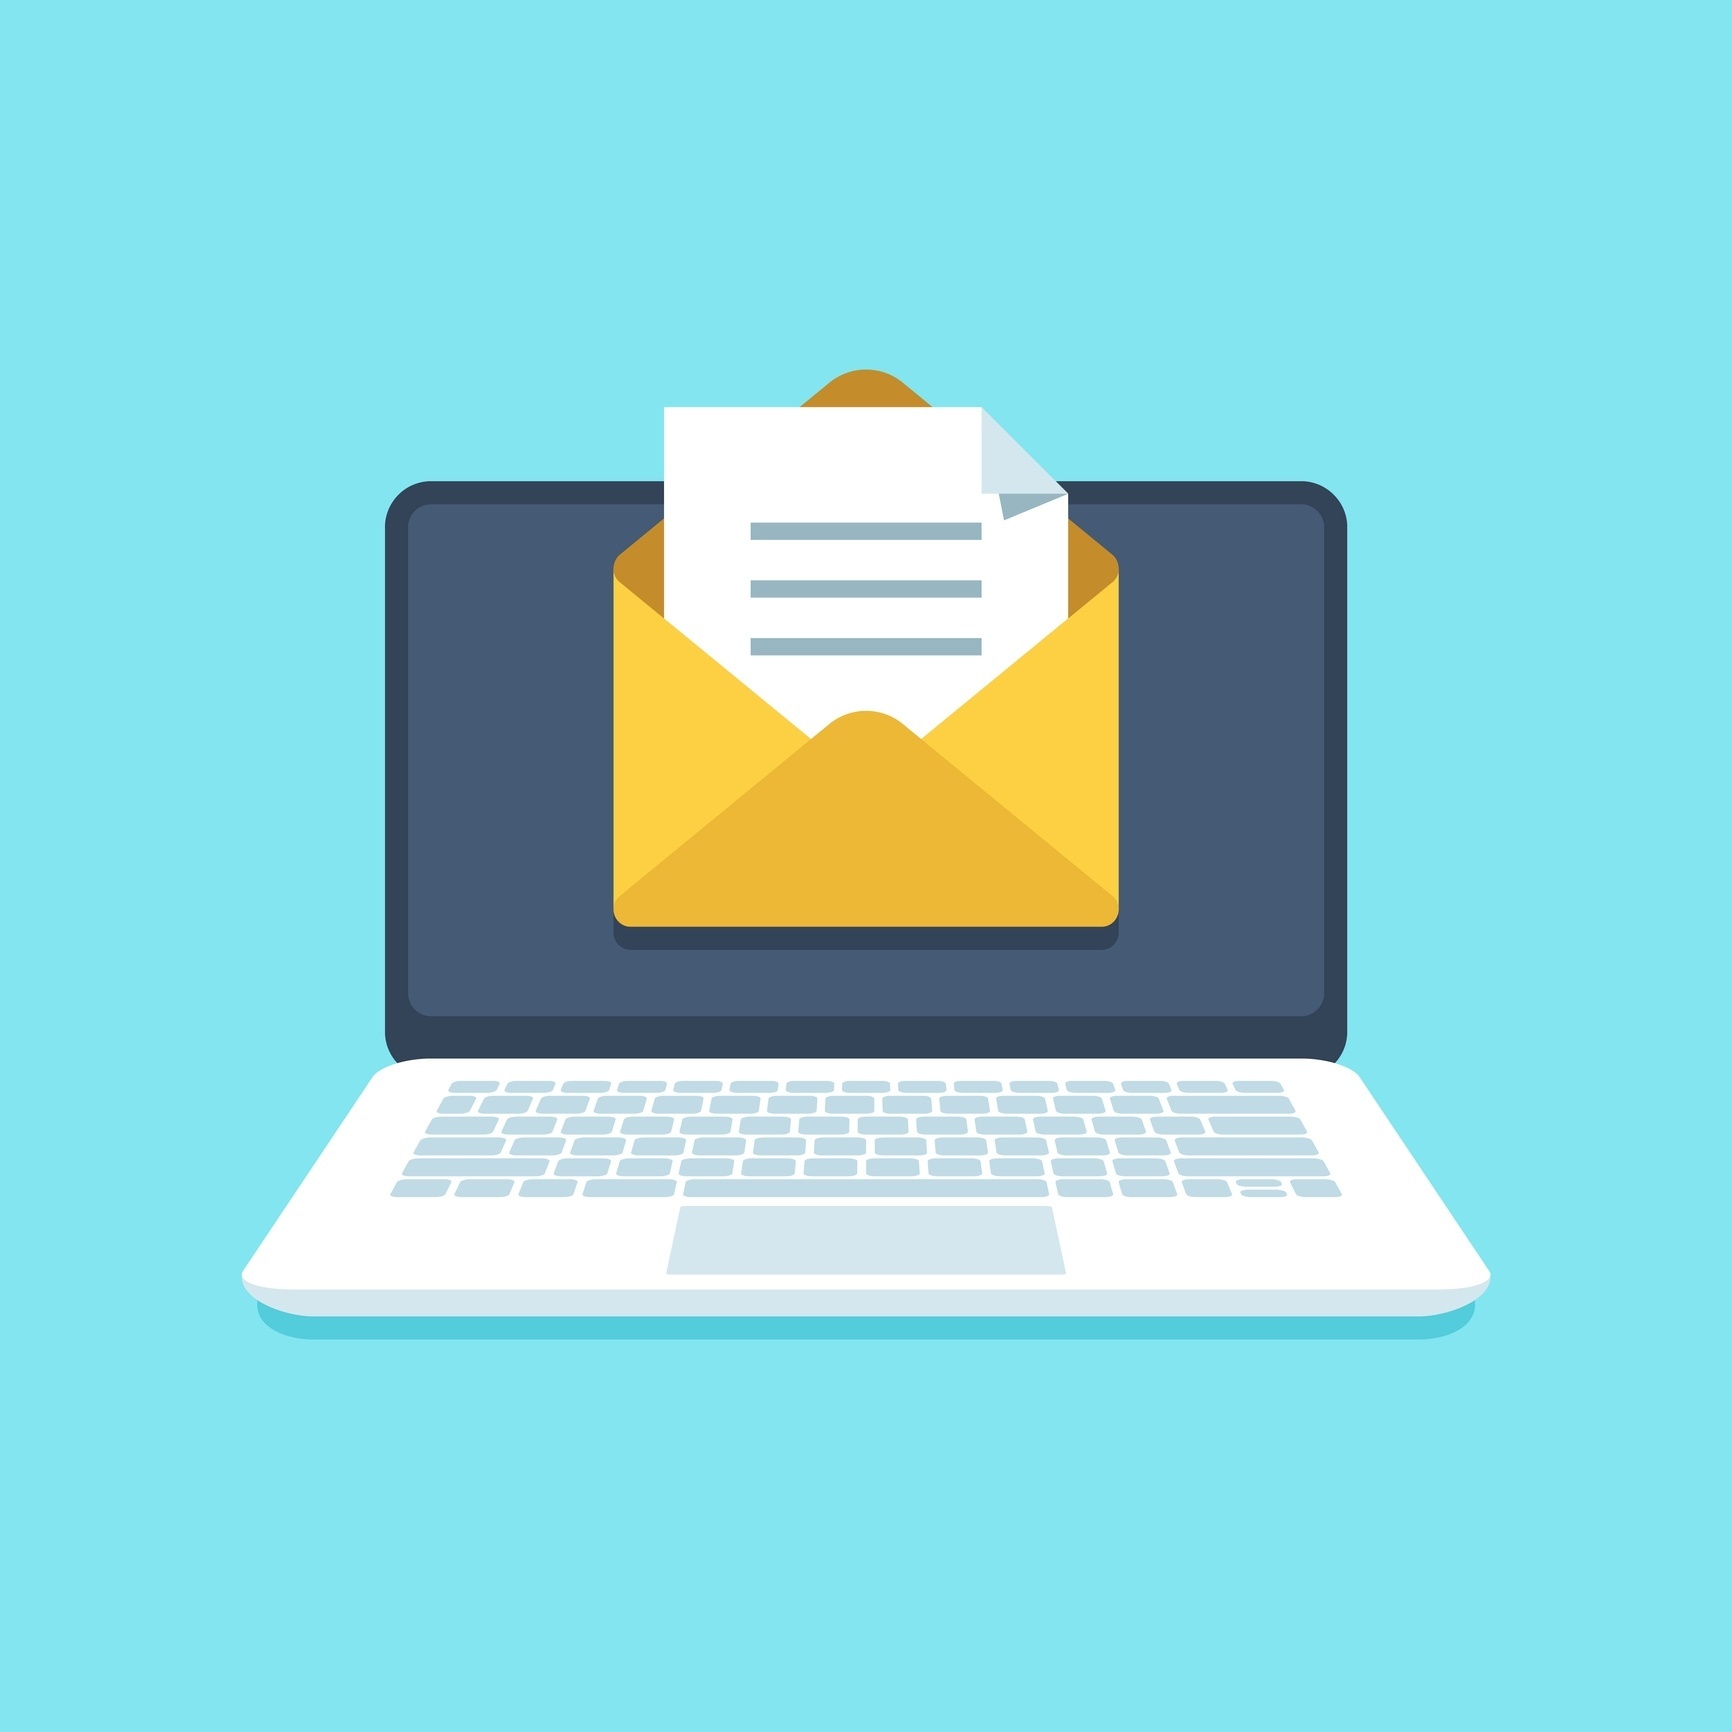 O que é um email temporário e para que serve?